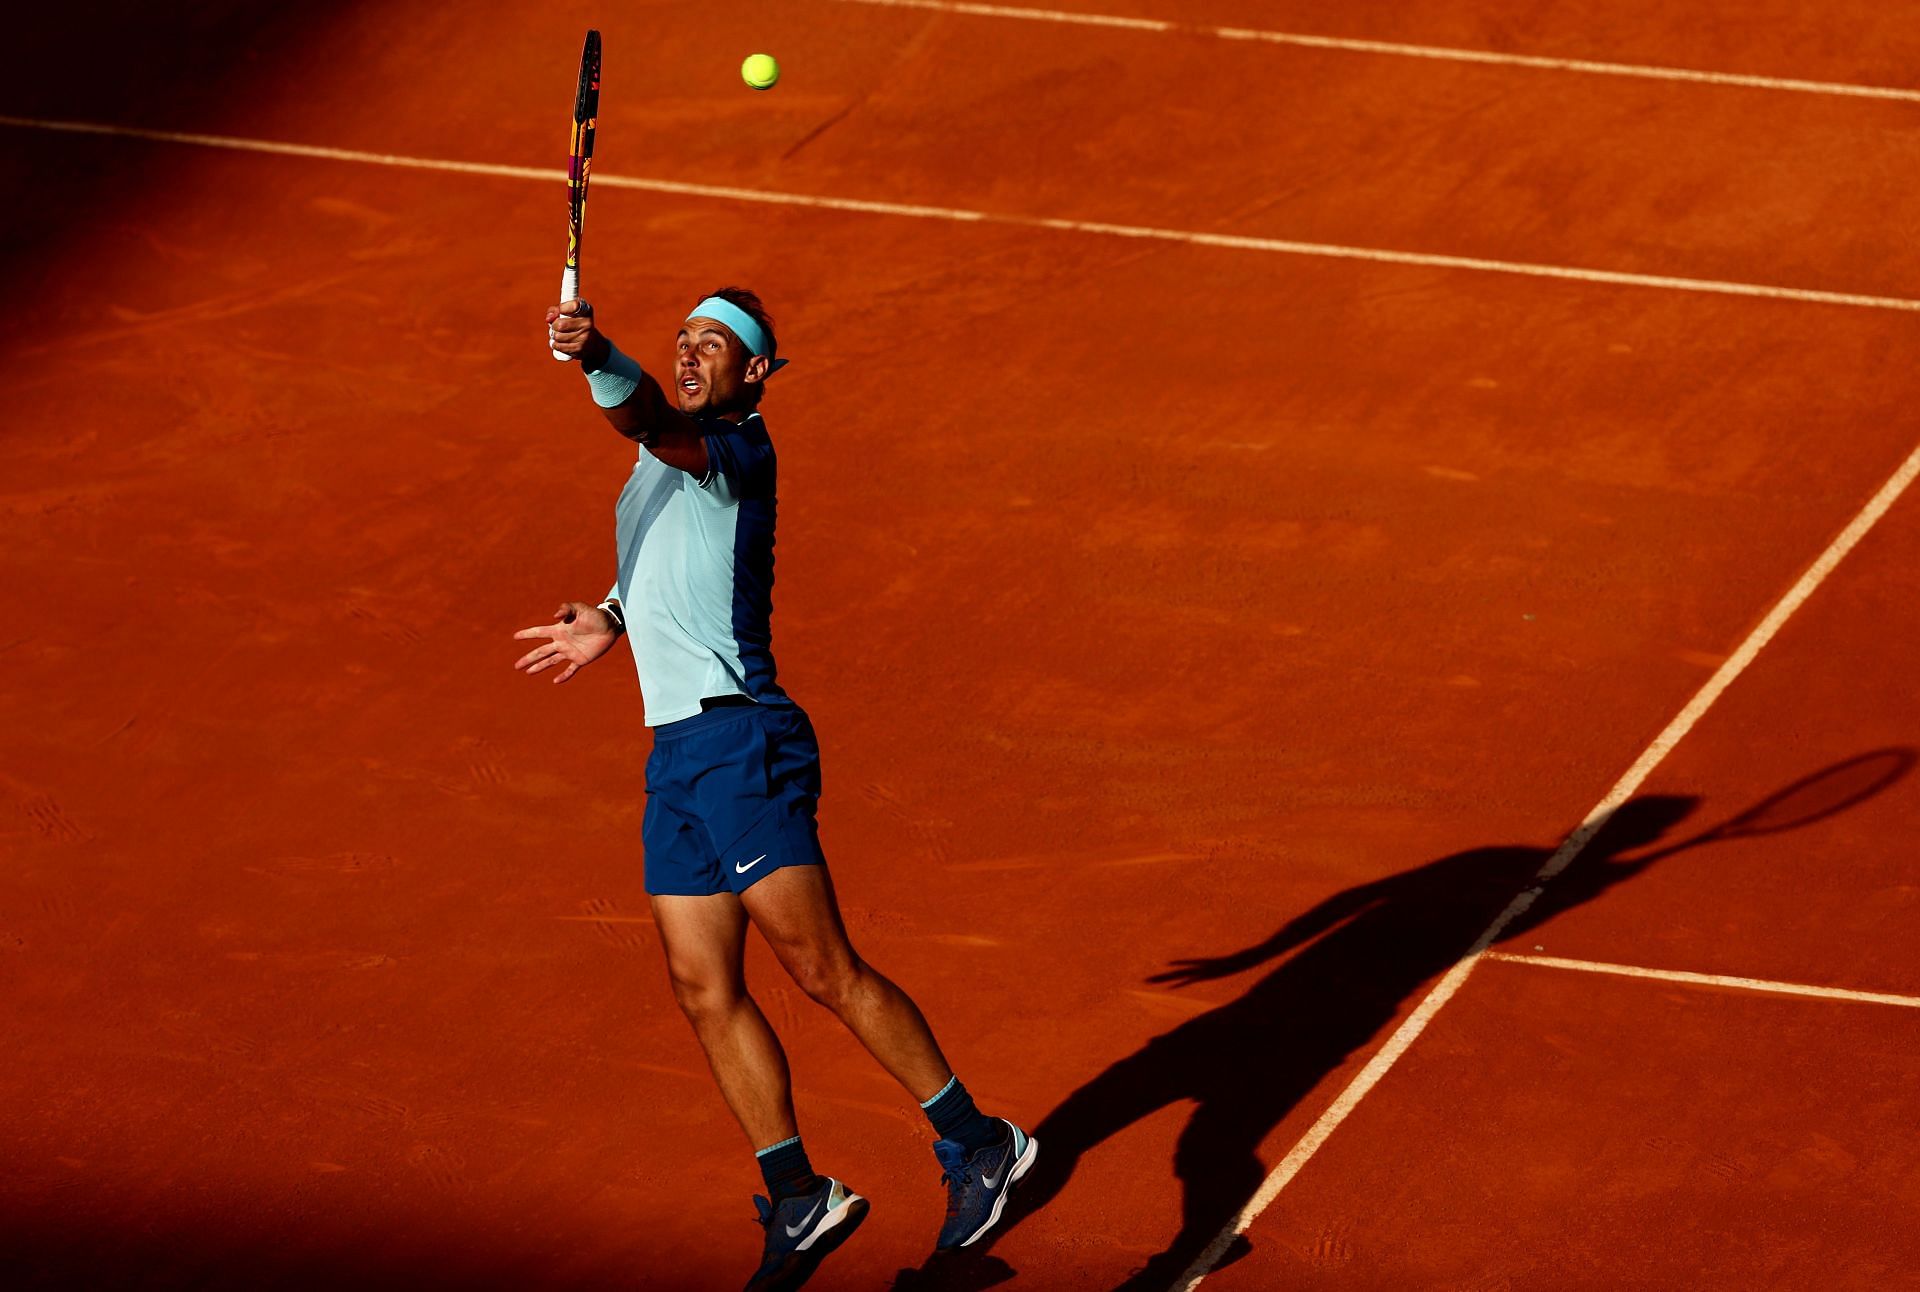 Italian Open 2022 Rafael Nadal vs Denis Shapovalov preview, head-to-head, prediction, odds and pick